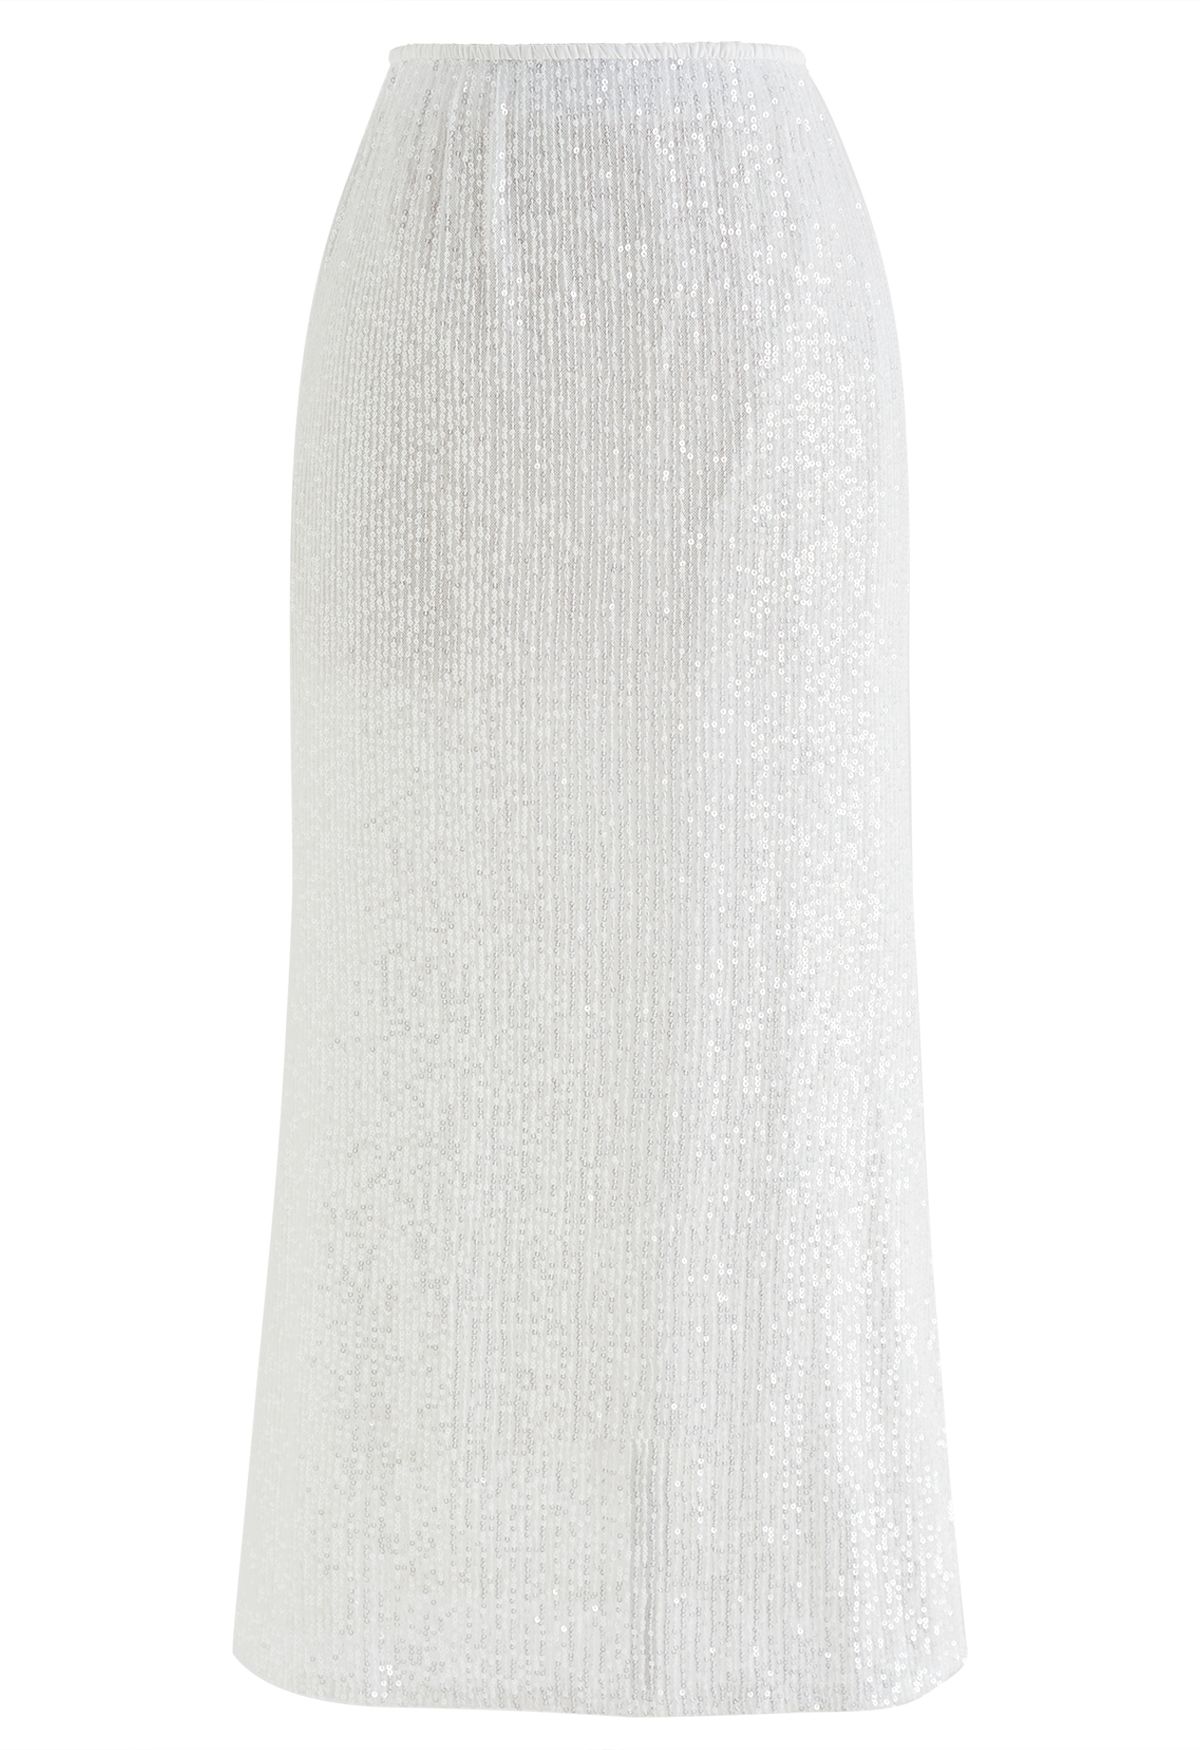 Falda de sirena con lentejuelas deslumbrantes en blanco